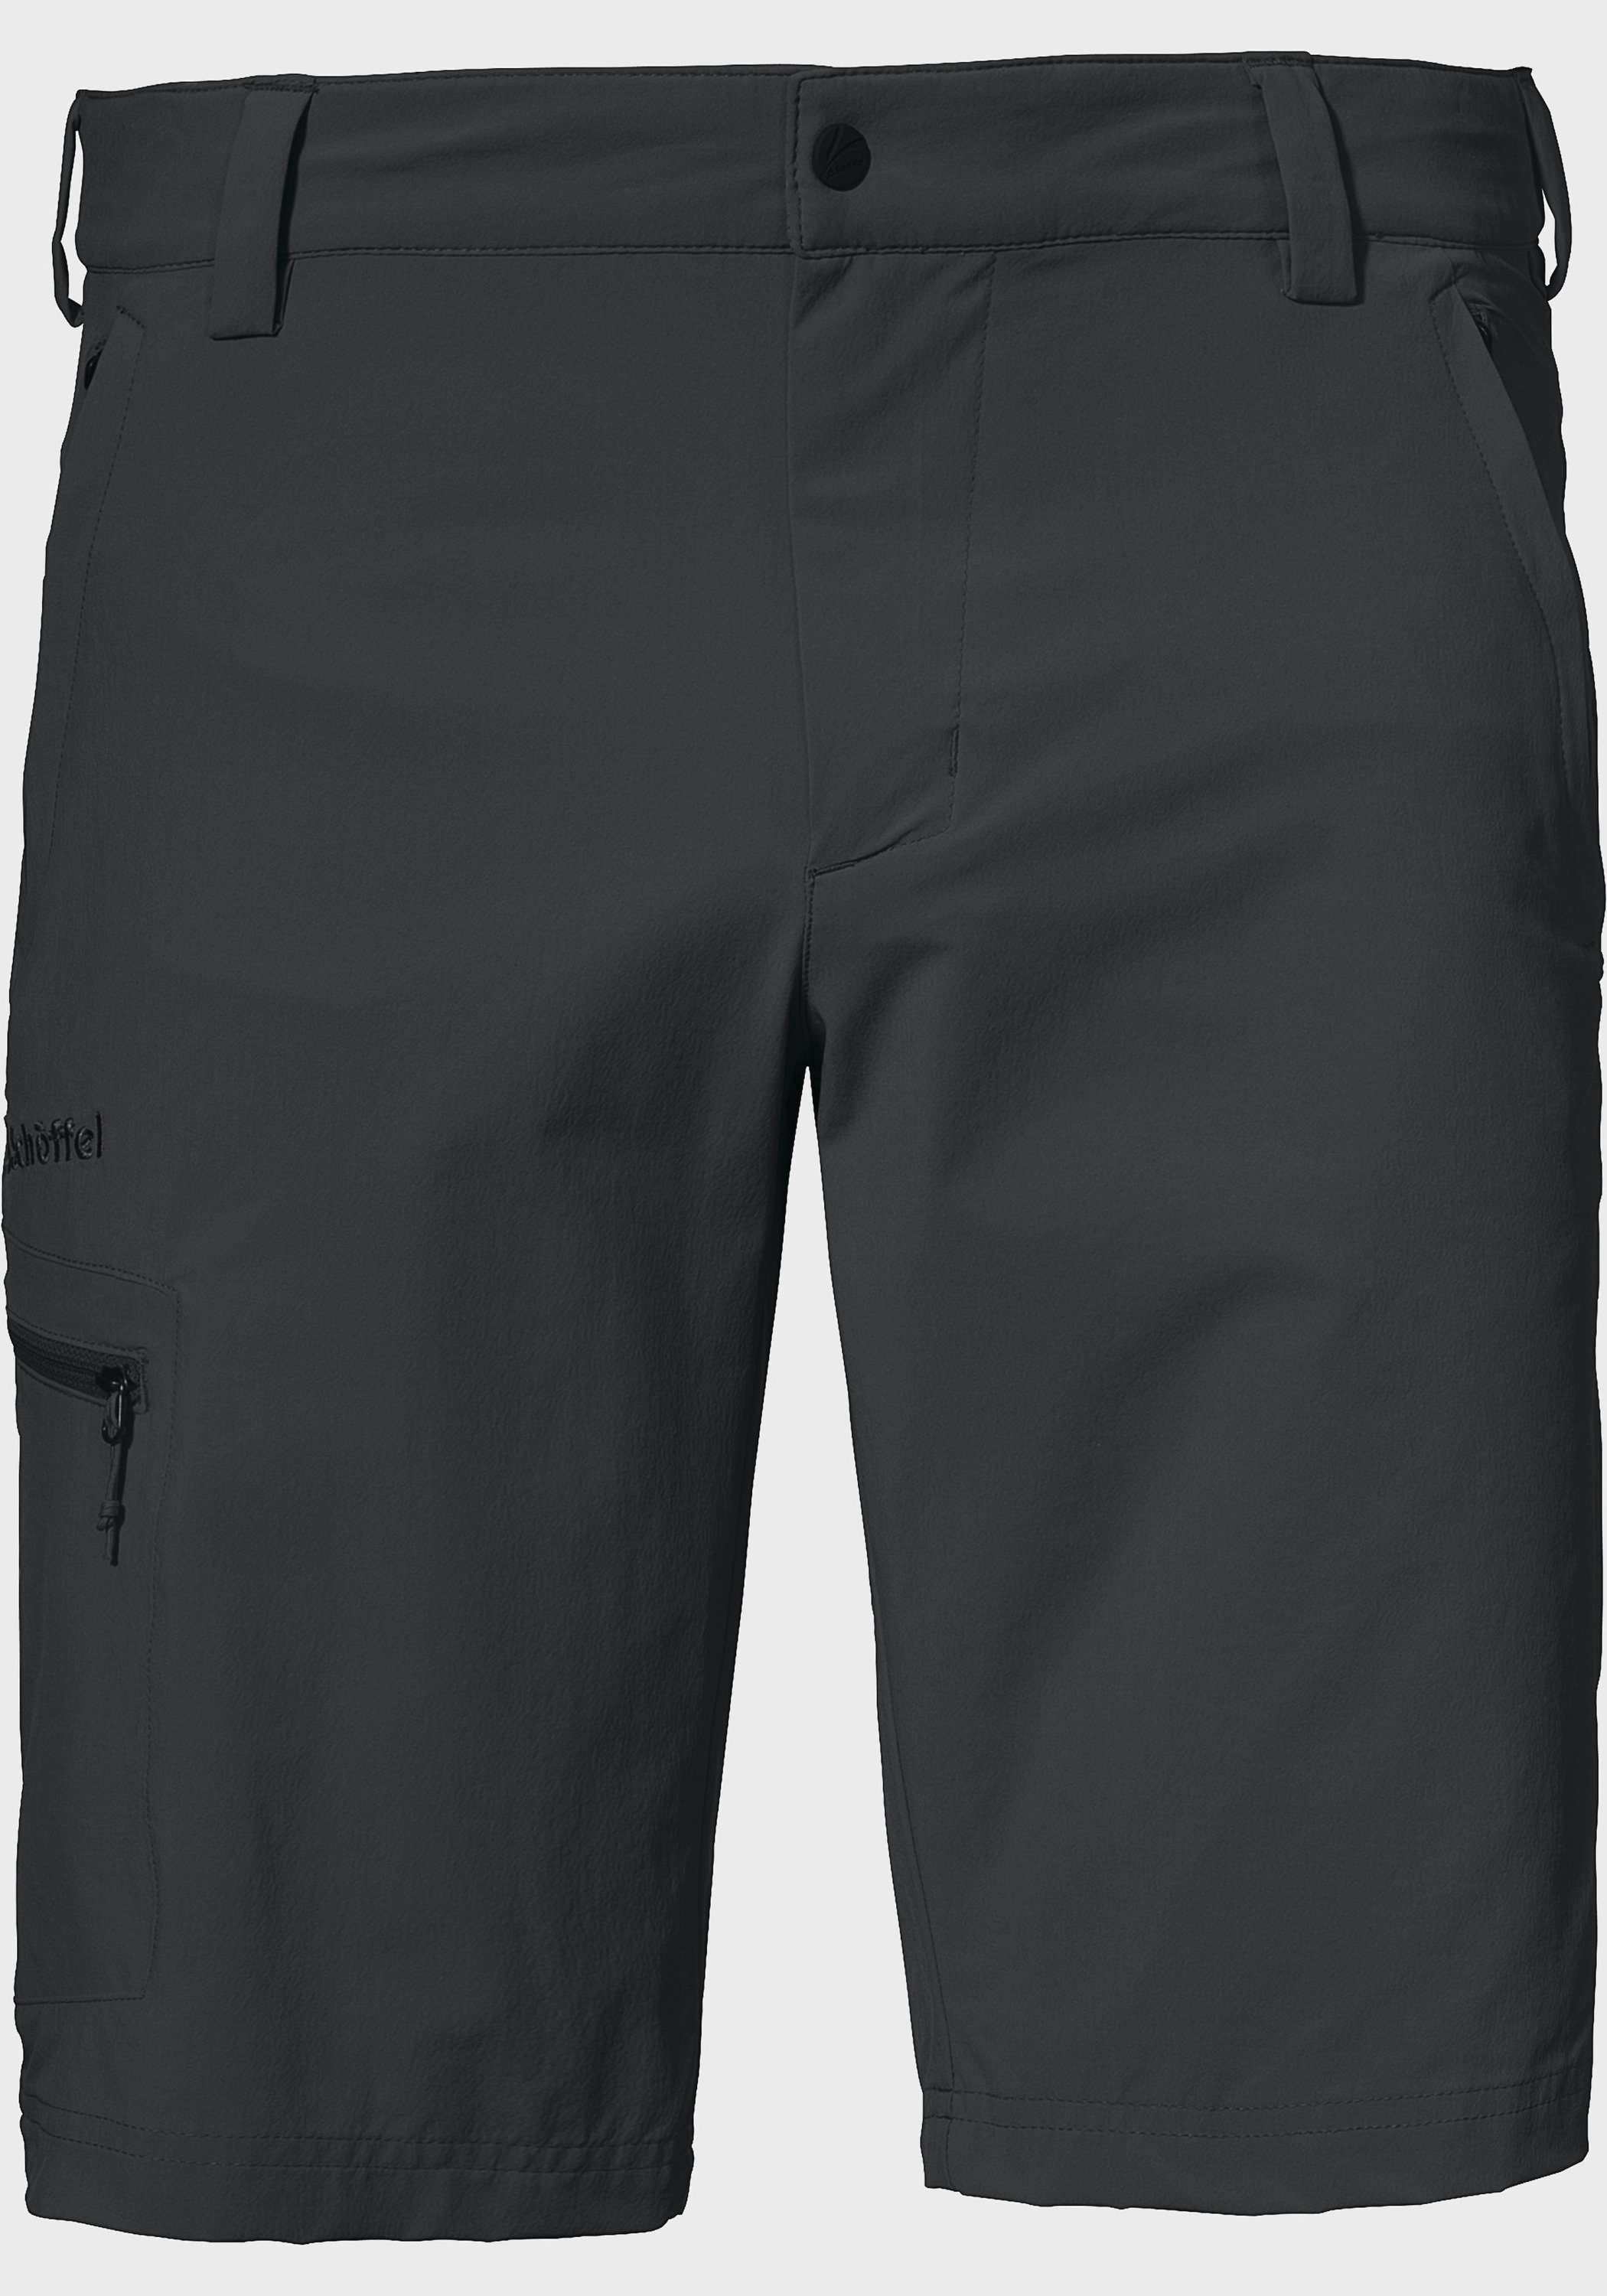 Bermudas Schöffel Folkstone grau Shorts